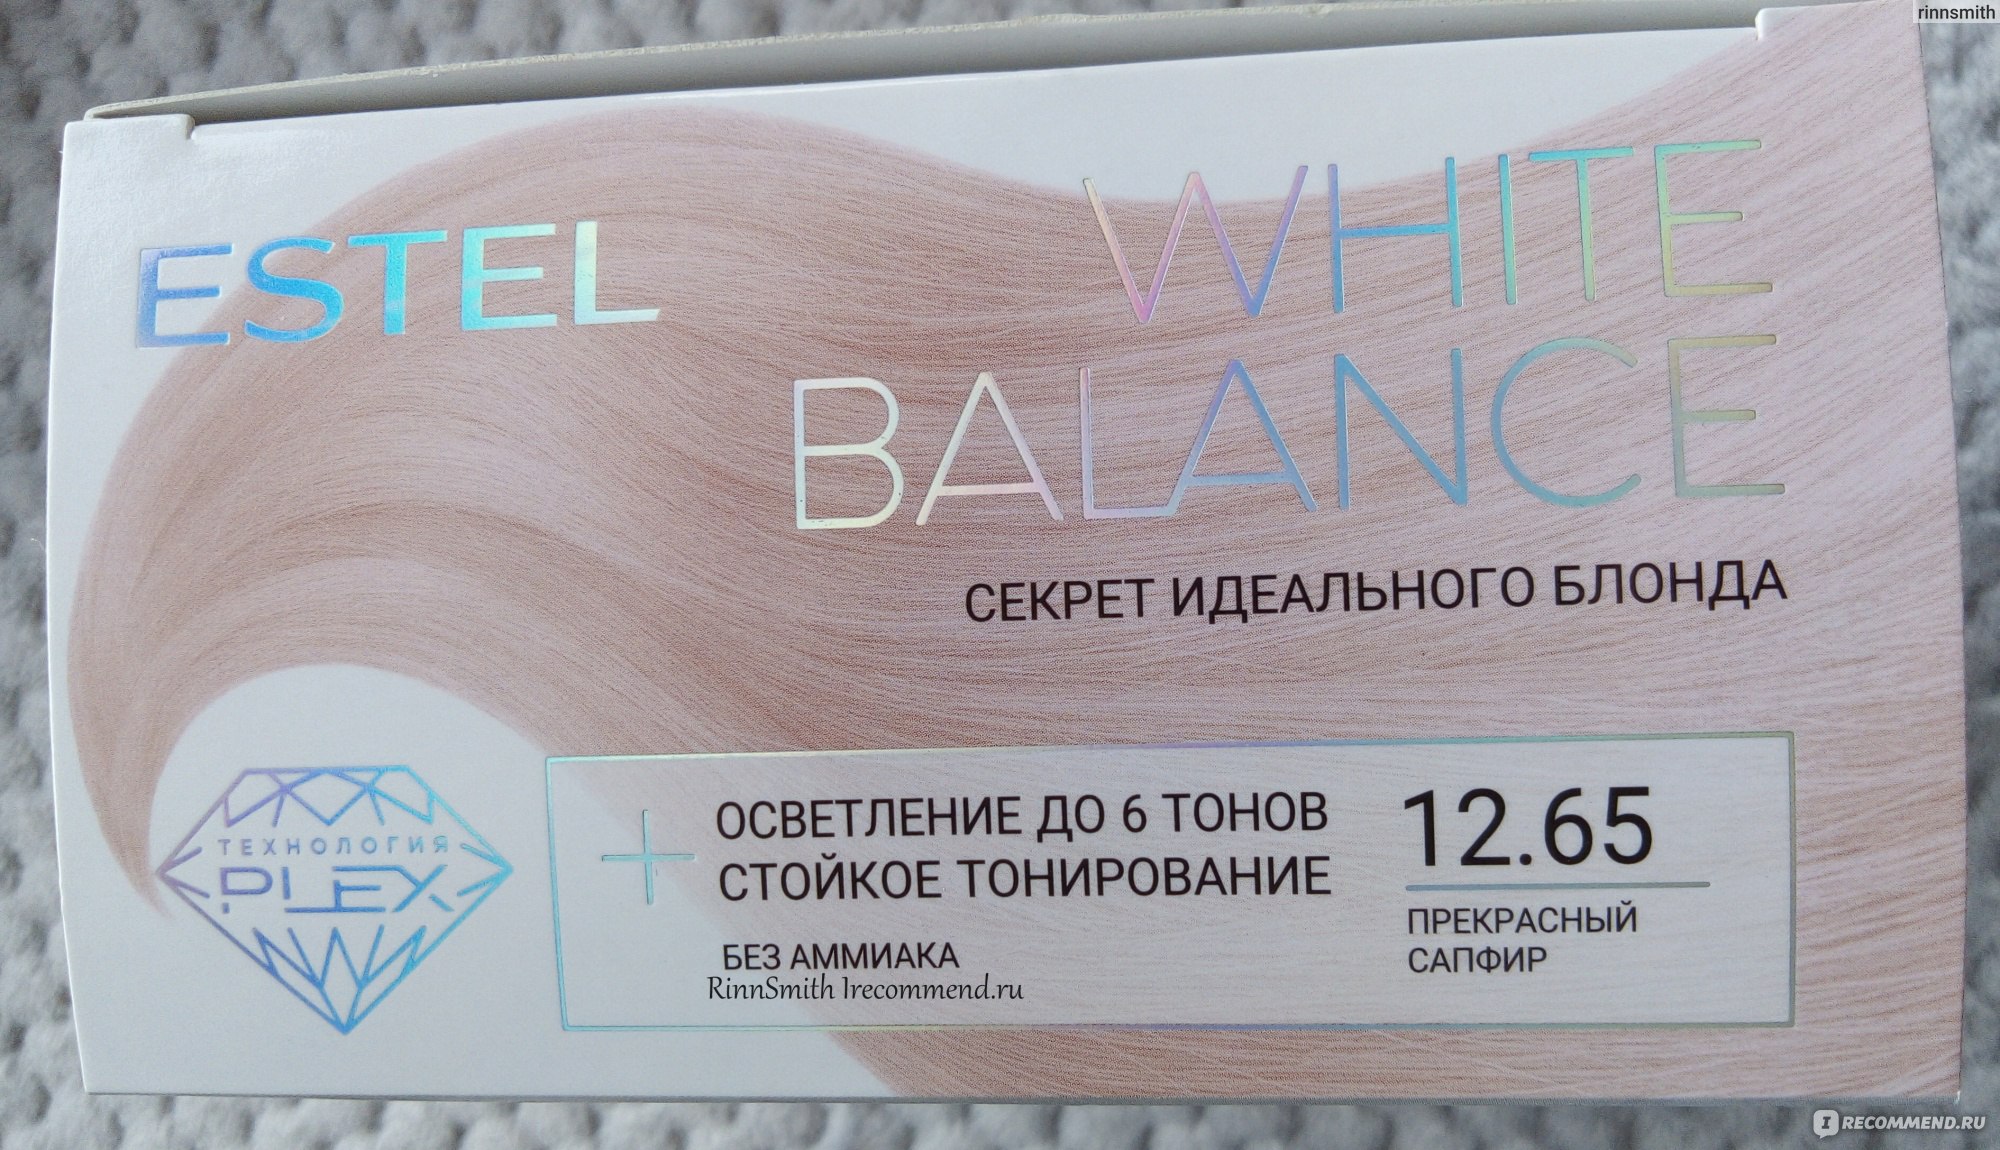 Estel White Balance 12.65 прекрасный сапфир